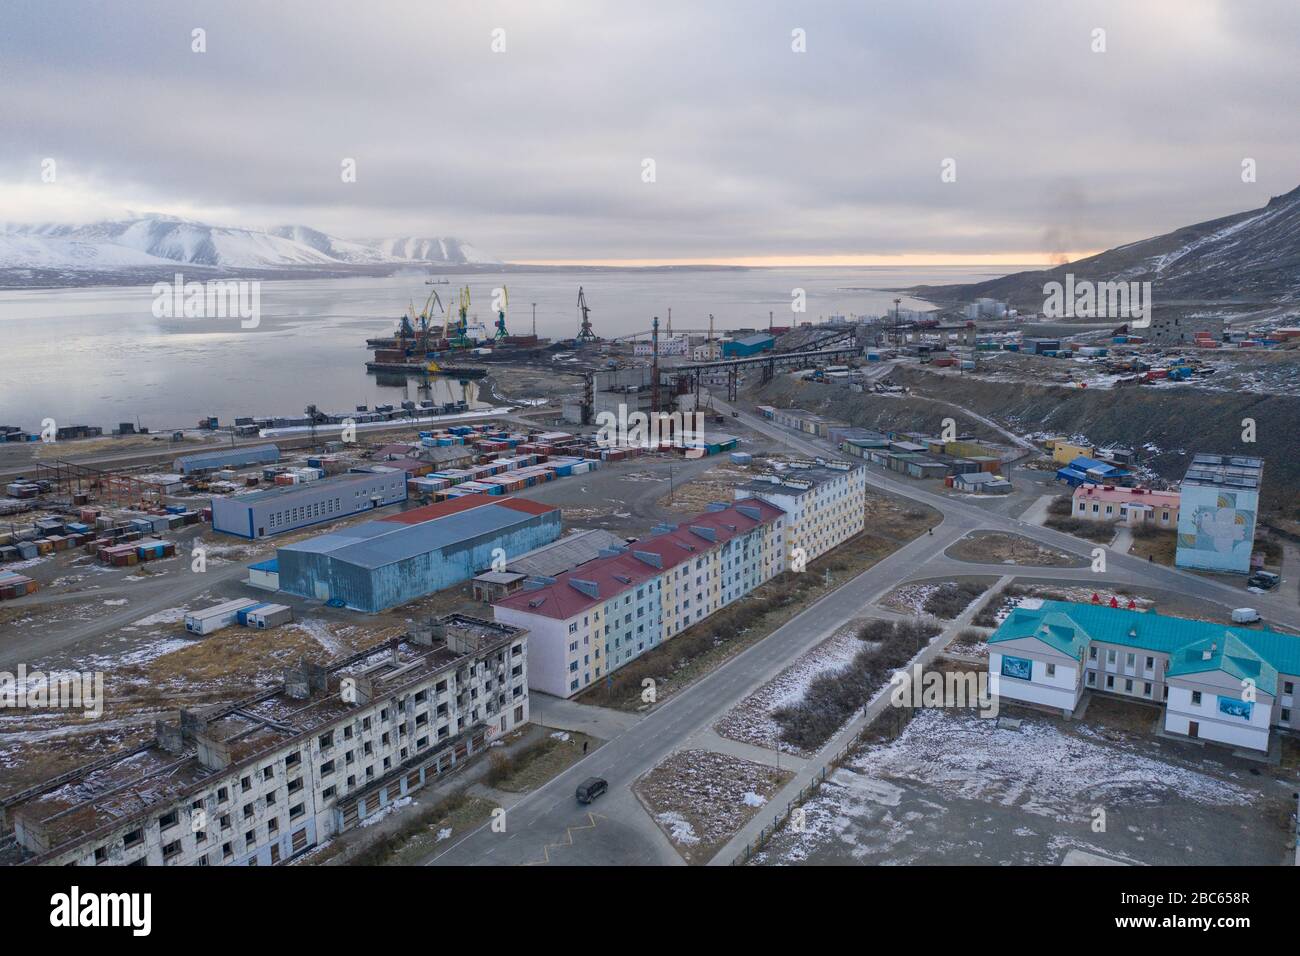 Egvekinot, région de Chukotski, Russie - 31 octobre 2019: La vue de dessus sur la colonie d'Egvekinot, la région de Chukchi, port et baie de mer. Banque D'Images